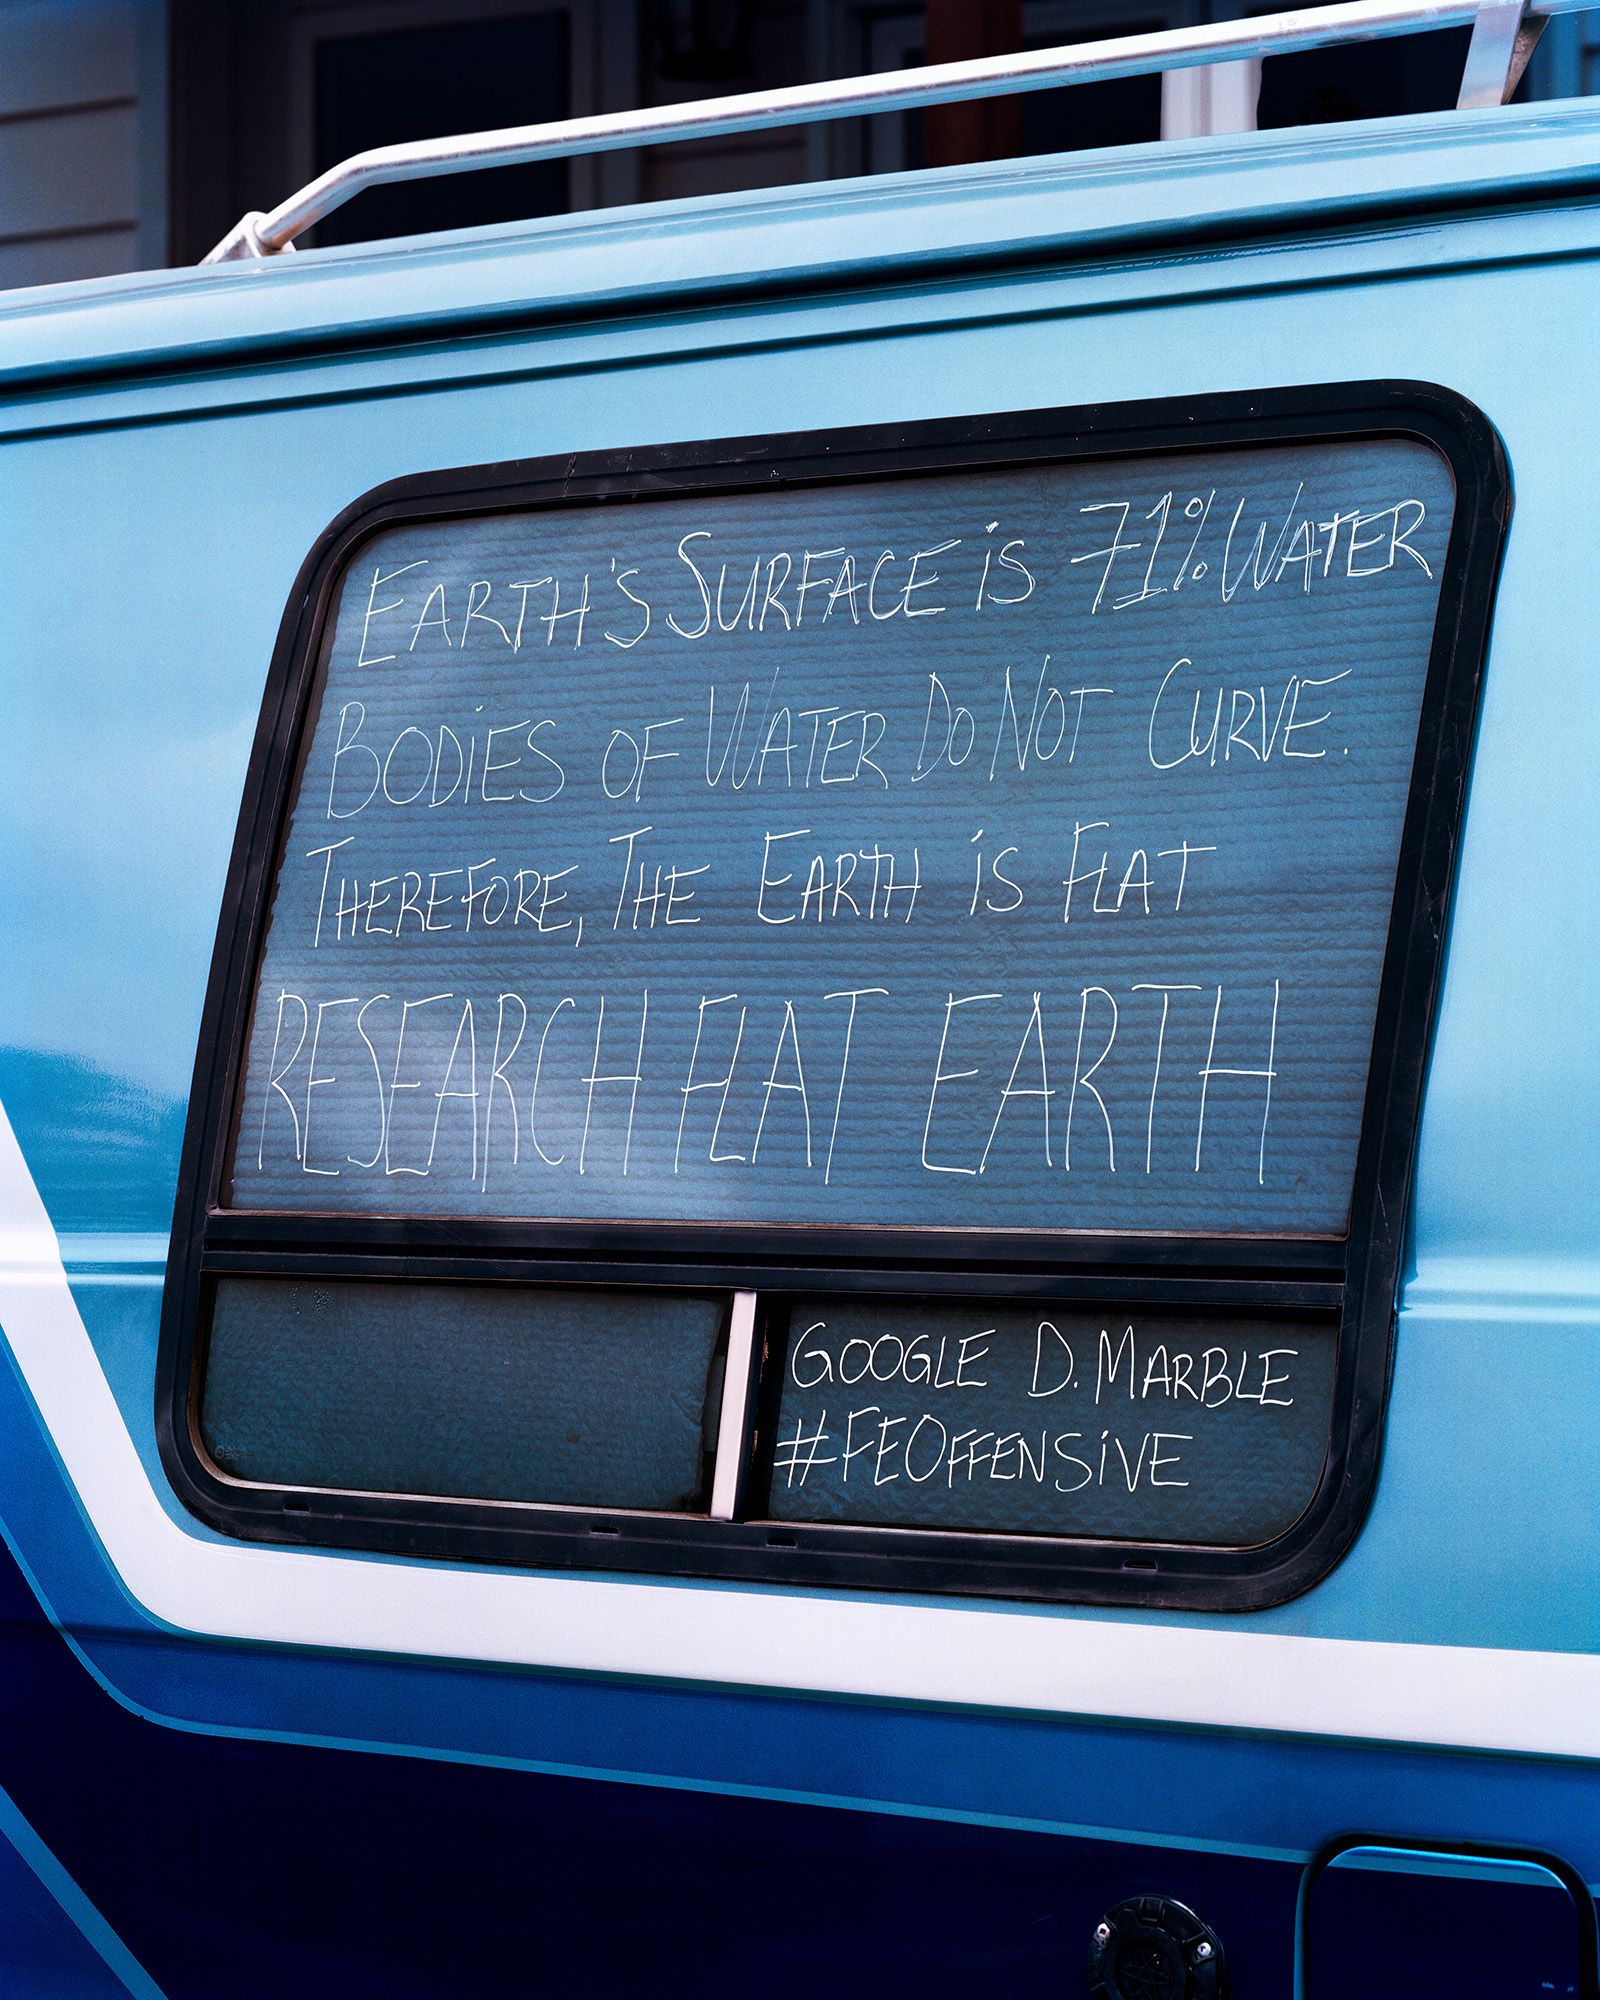 © Philippe Braquenier - Title: Propaganda - 2018 Description: Darryle Marble's personal car.